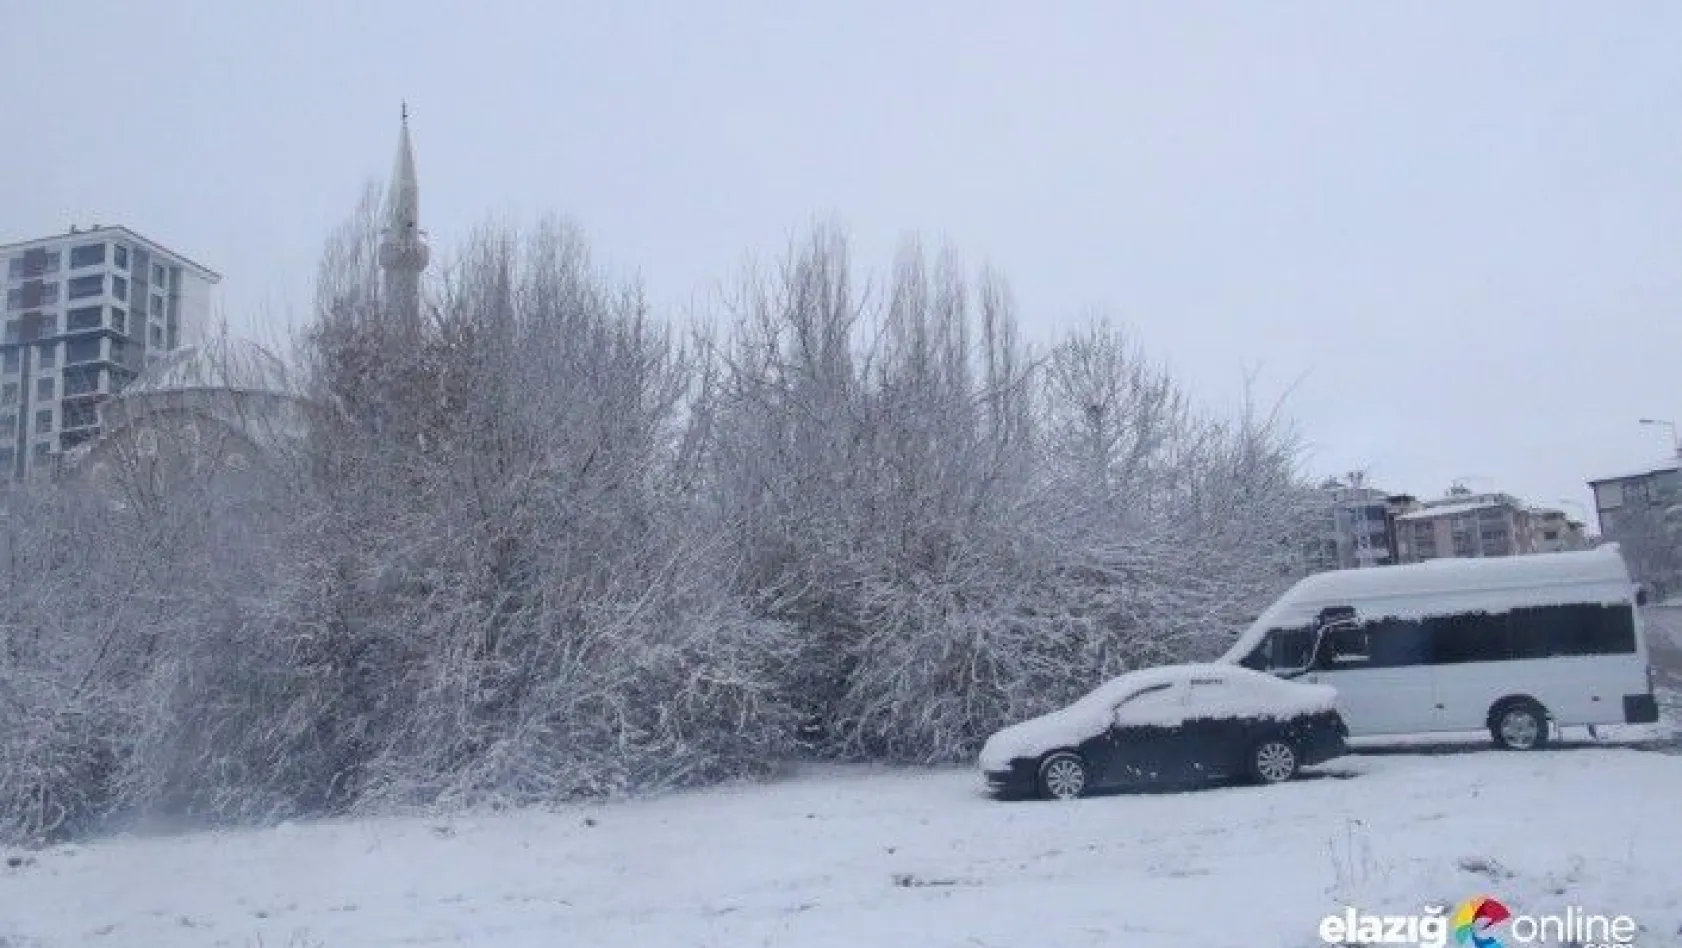 Elazığ'da kar 179 köy yolunu kapattı, 8 ilçede okullar tatil edildi